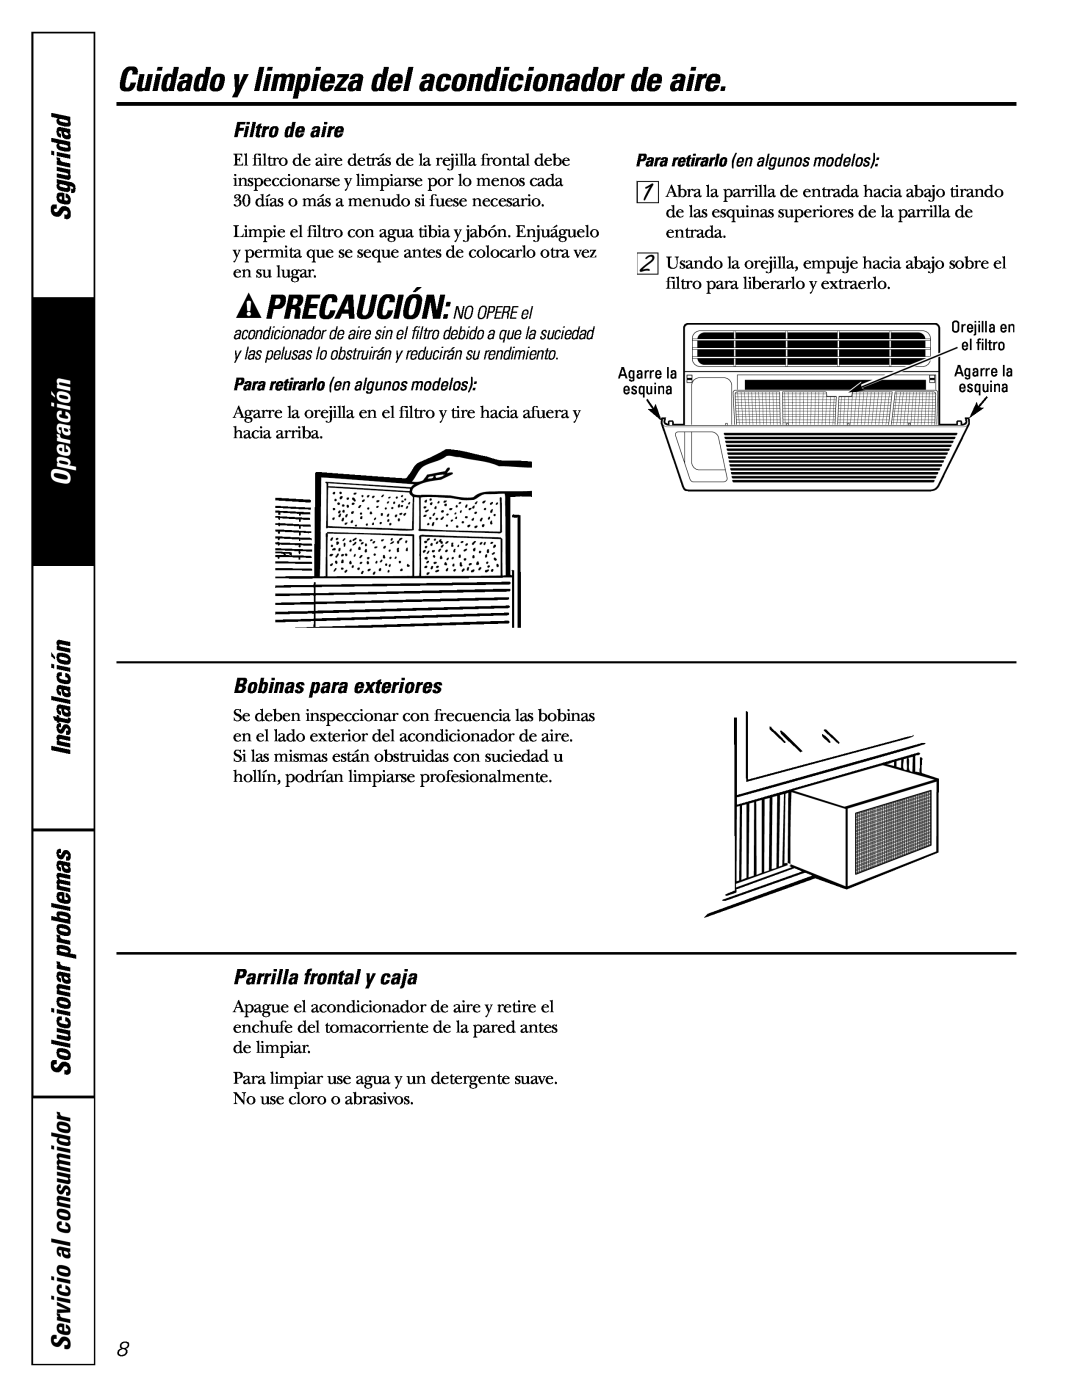 GE AGF05 Cuidado y limpieza del acondicionador de aire, PRECAUCIÓN NO OPERE el, Seguridad, Filtro de aire, Operación 